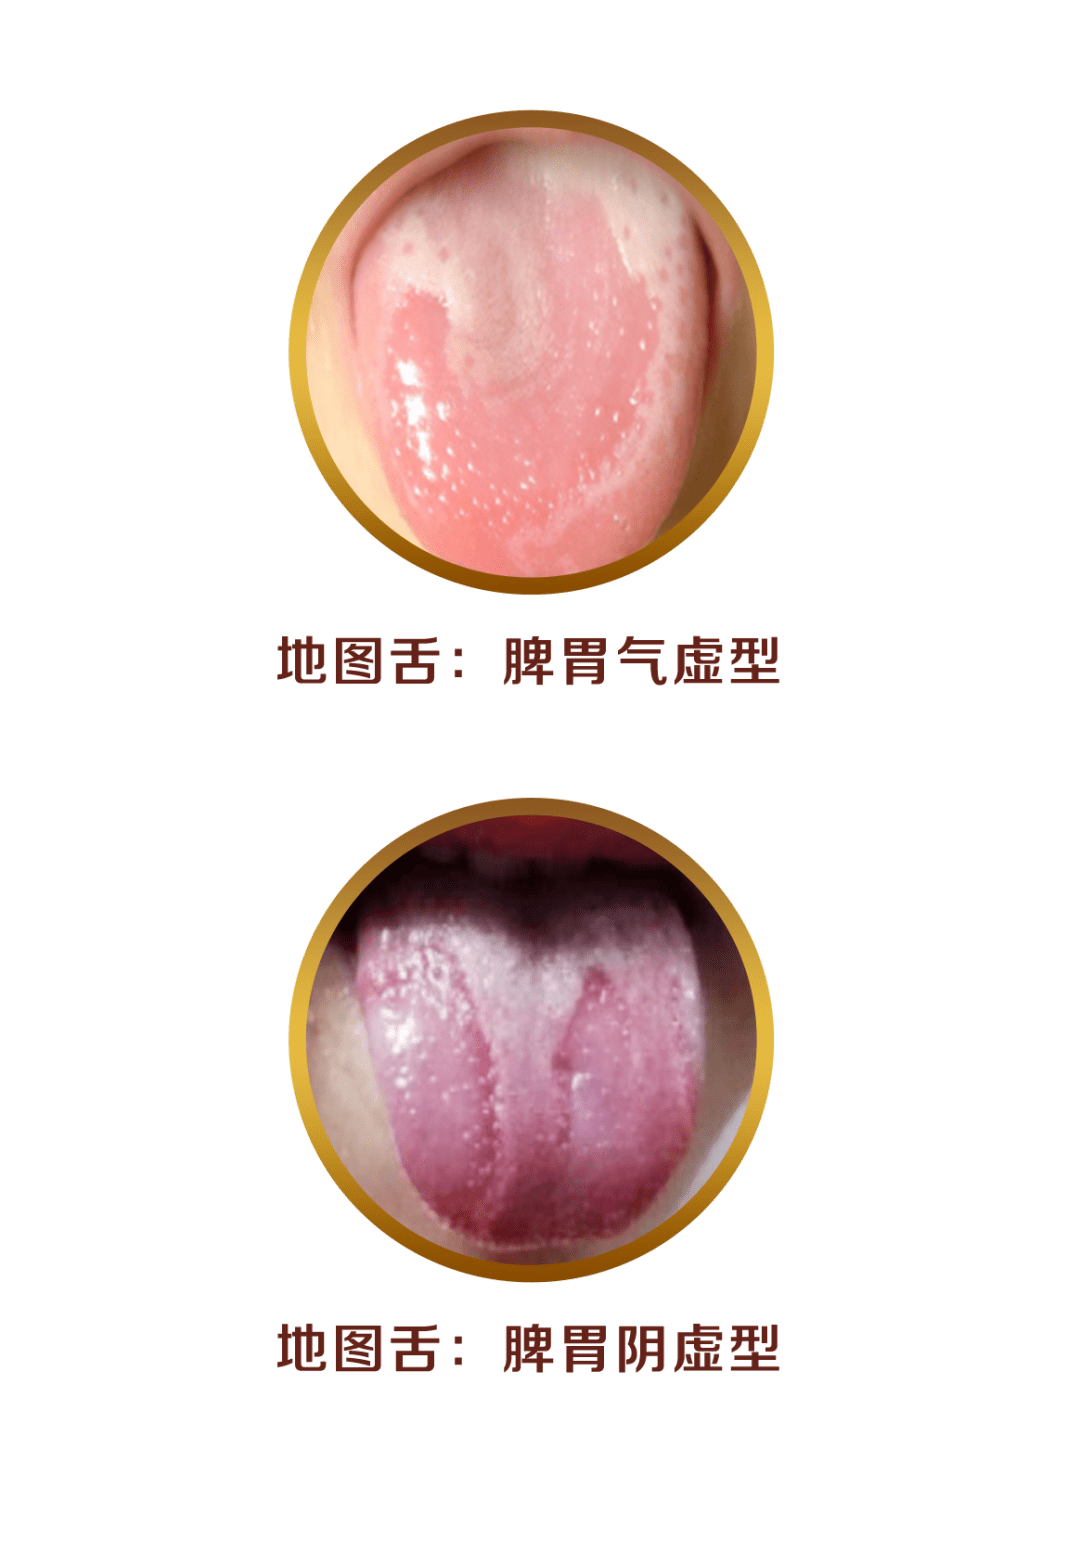 注意:这4种舌苔,是宝宝健康在预警!